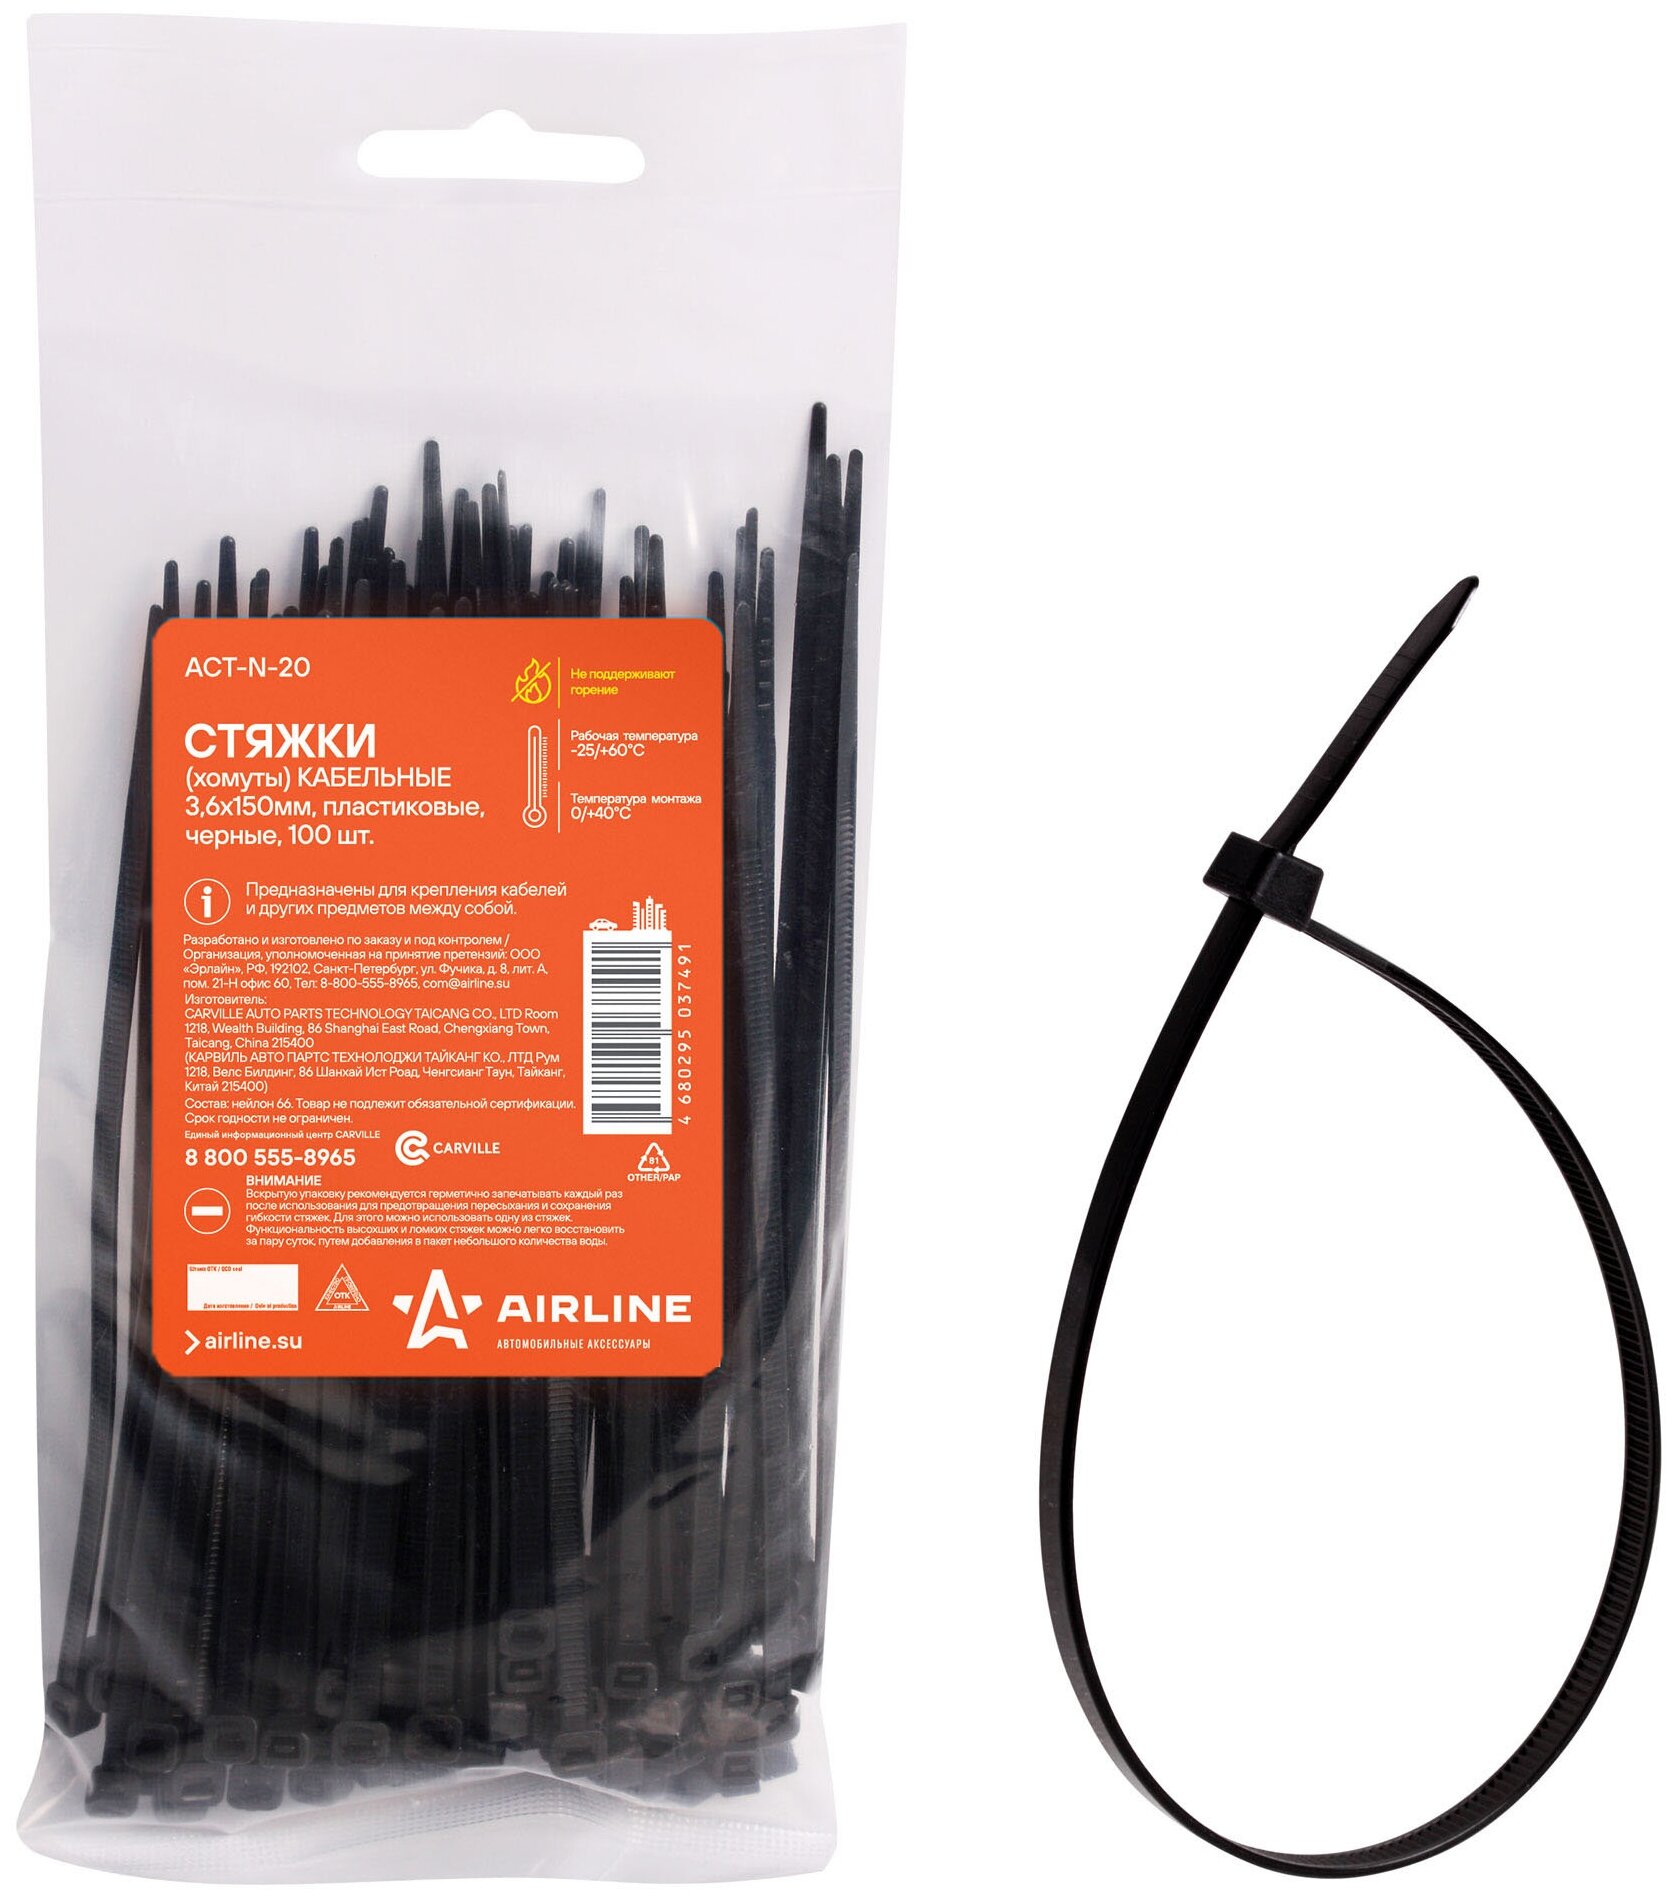 Стяжки (хомуты) кабельные 3,6*150 мм, пластиковые, черные, 100 штук